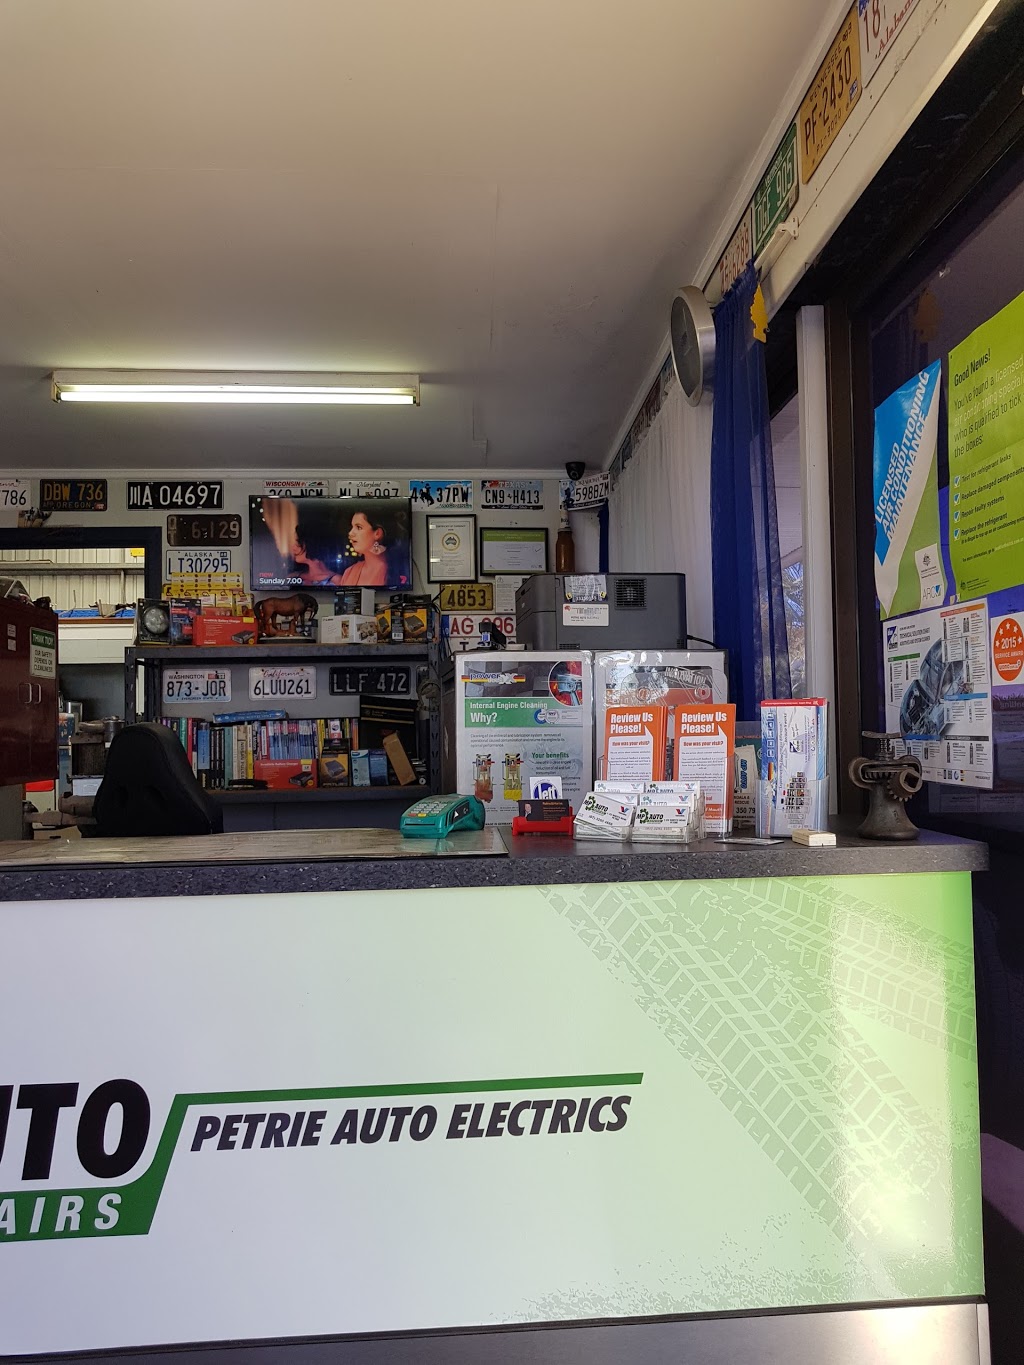 MP Auto Repair Centre | car repair | 1/22 Whites Rd, Petrie QLD 4502, Australia | 0732854666 OR +61 7 3285 4666